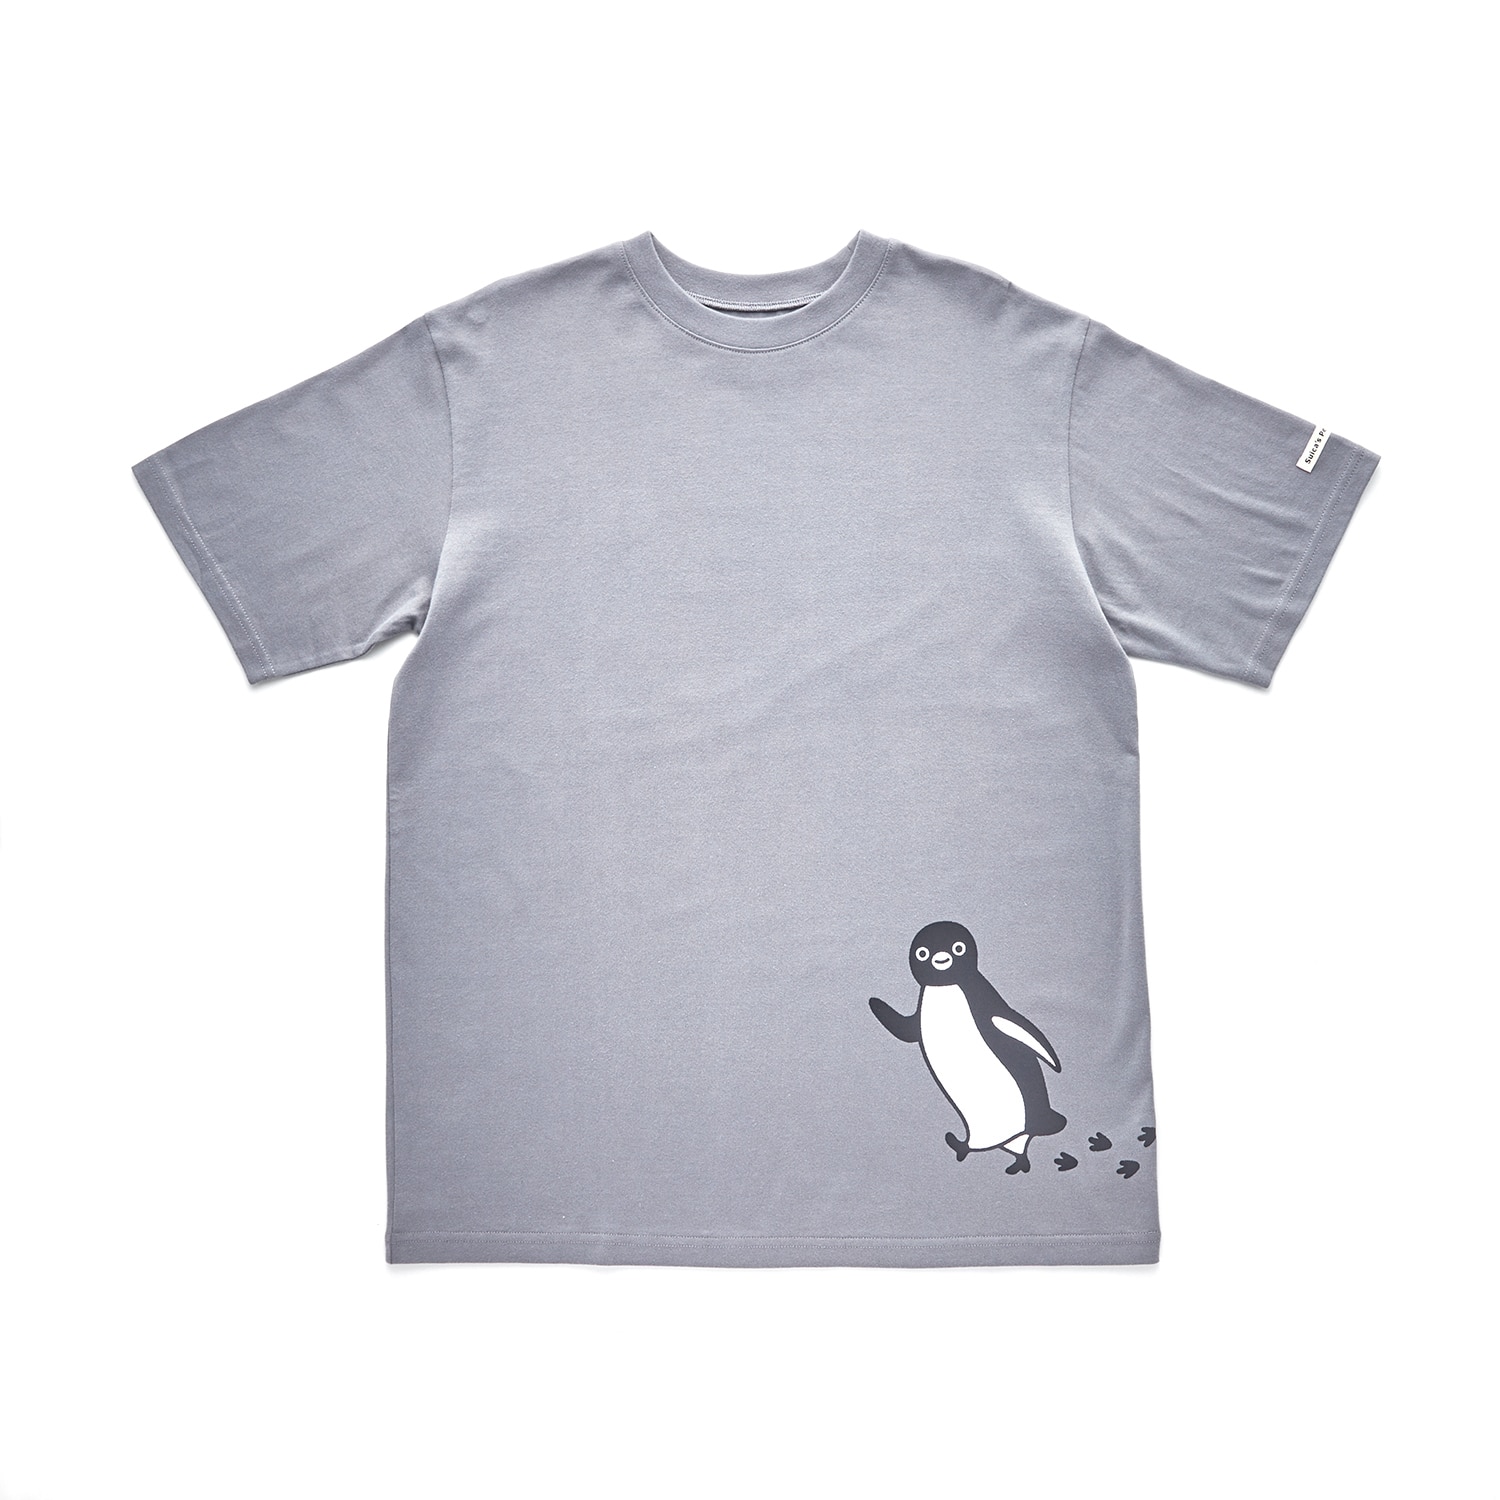 ベルメゾン Suicaのペンギン 親子でつながるユニセックス半袖Tシャツ「Suicaのペンギン」 チャコールグレー M